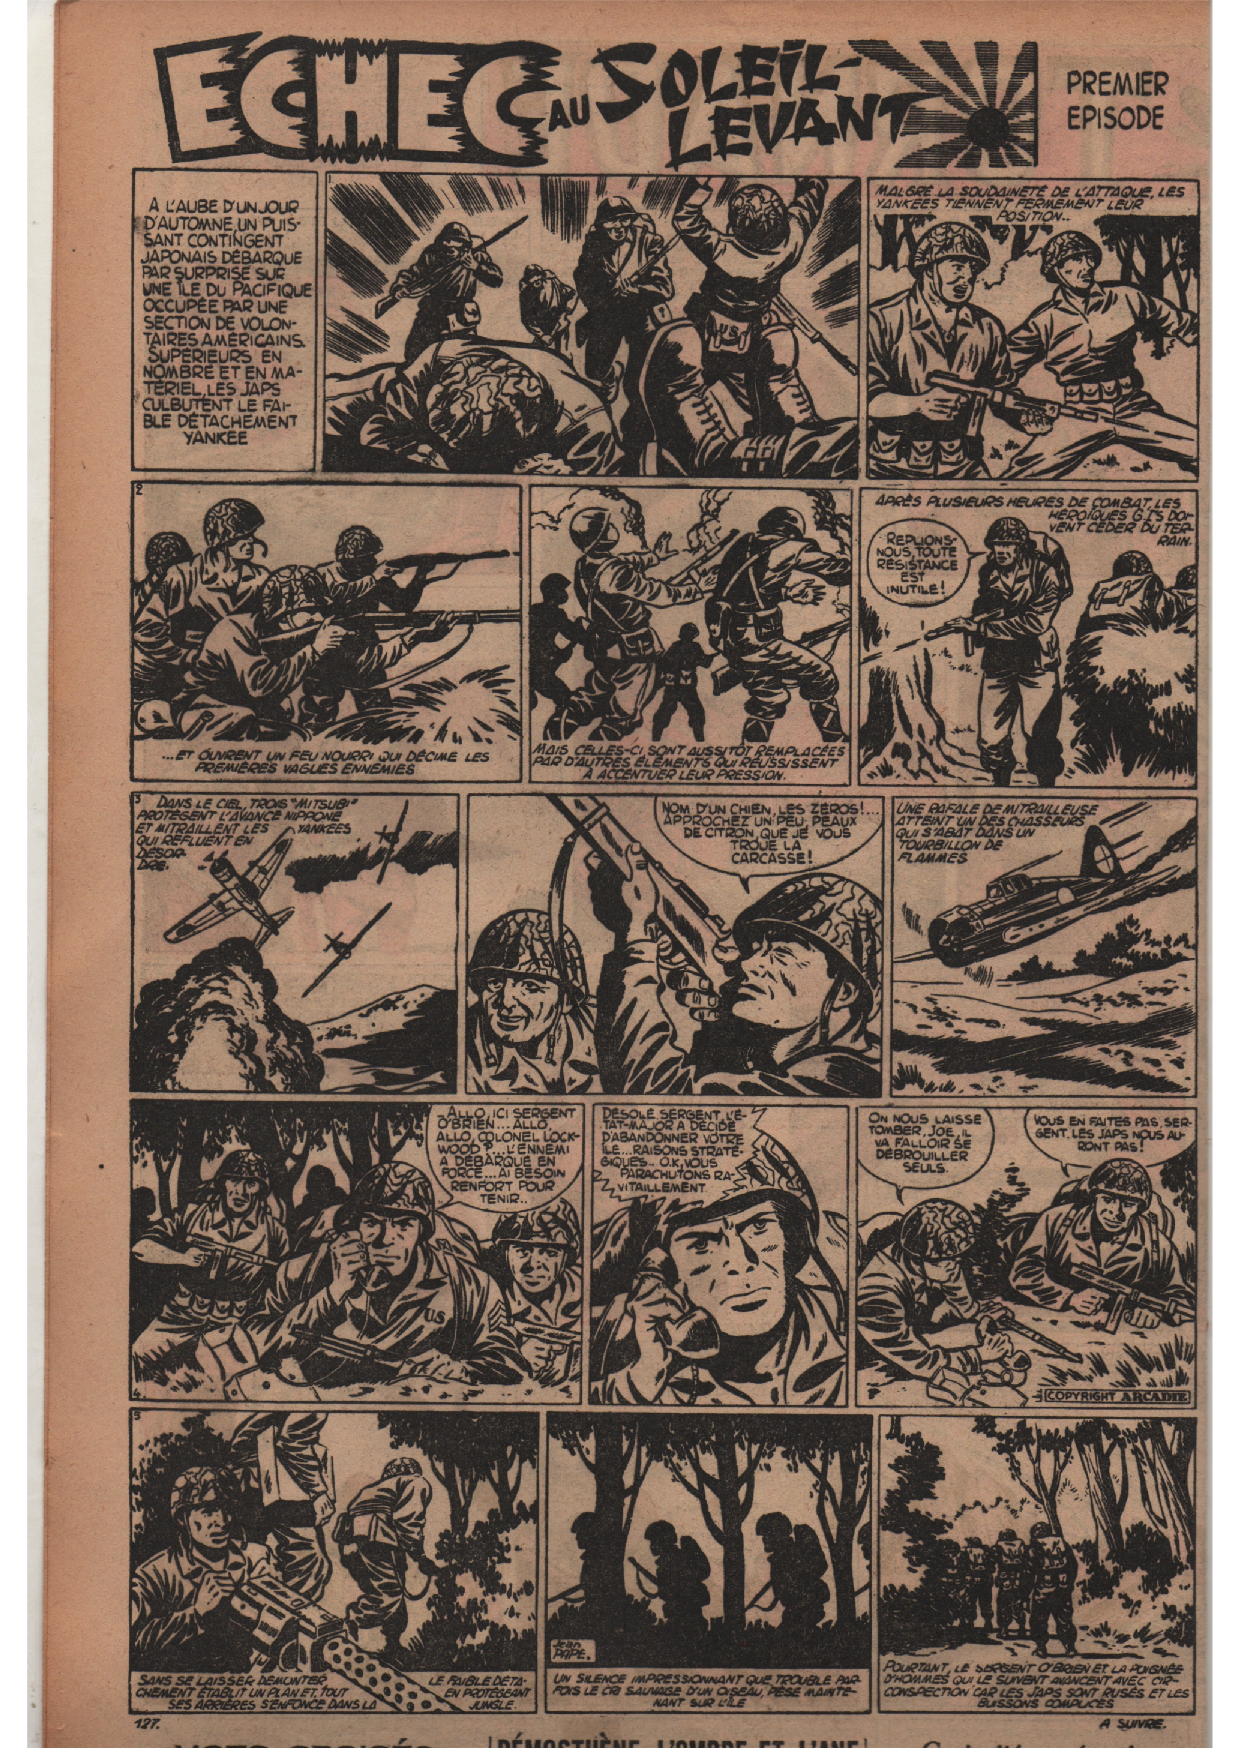 « O Brien : Échec au soleil levant » : Zorro n° 127 (09/10/1948).